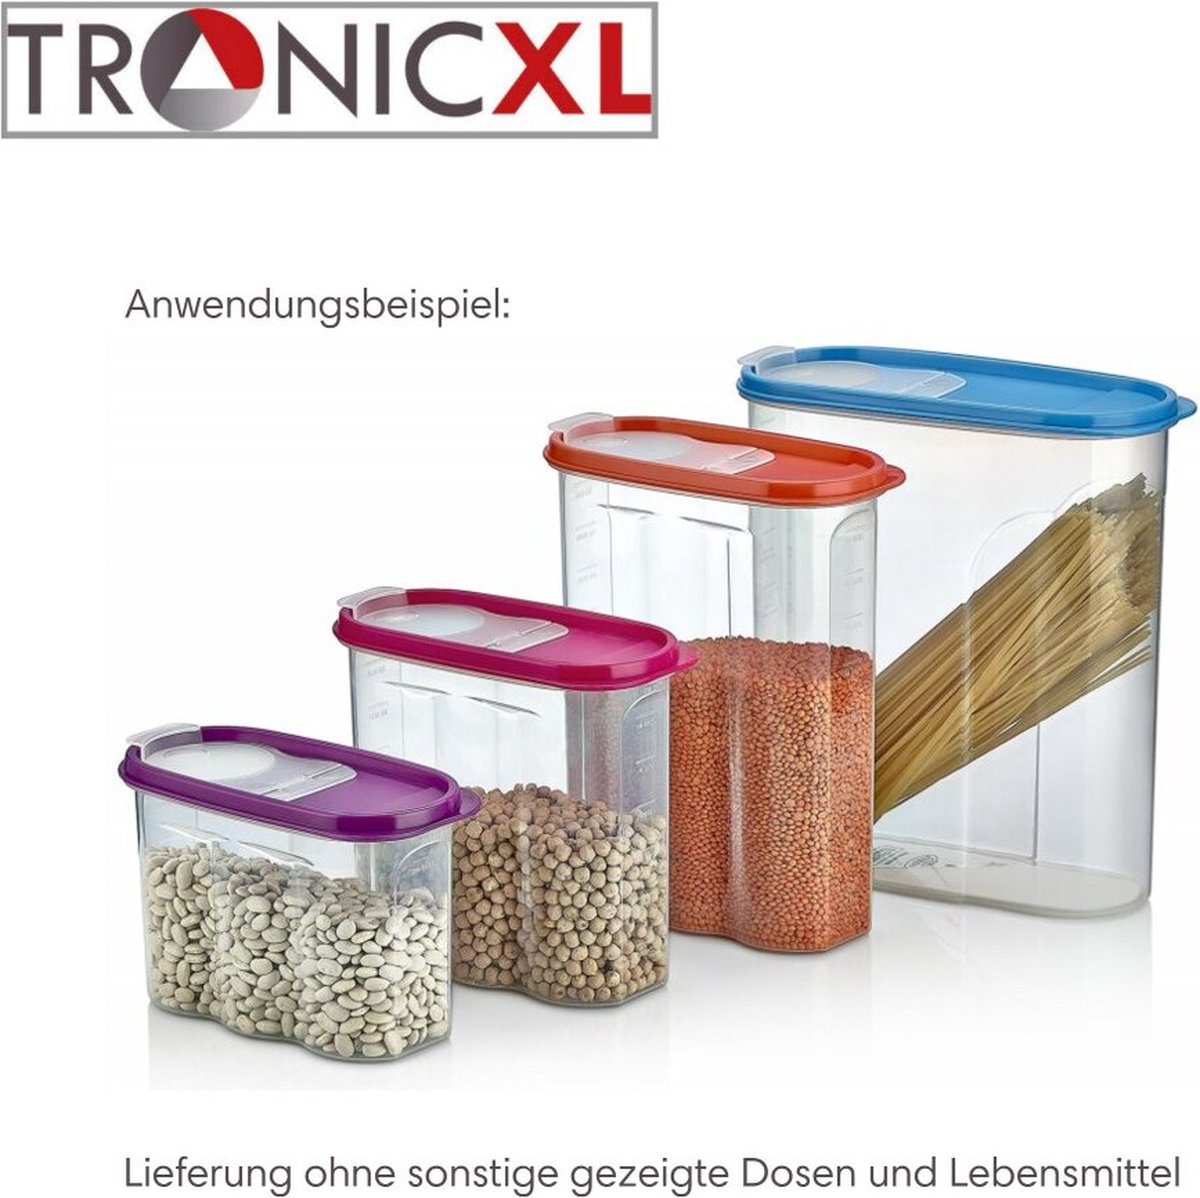 TronicXL 4 stuks bulkdozen 2,4 l groot, stapelbare set, voorraaddozen, gemengde kleuren, vershouddozen, BPA-vrij, kunststof, strooidoos, bijvoorbeeld voor cornflakes, diervoer, muesli, 2,4 liter